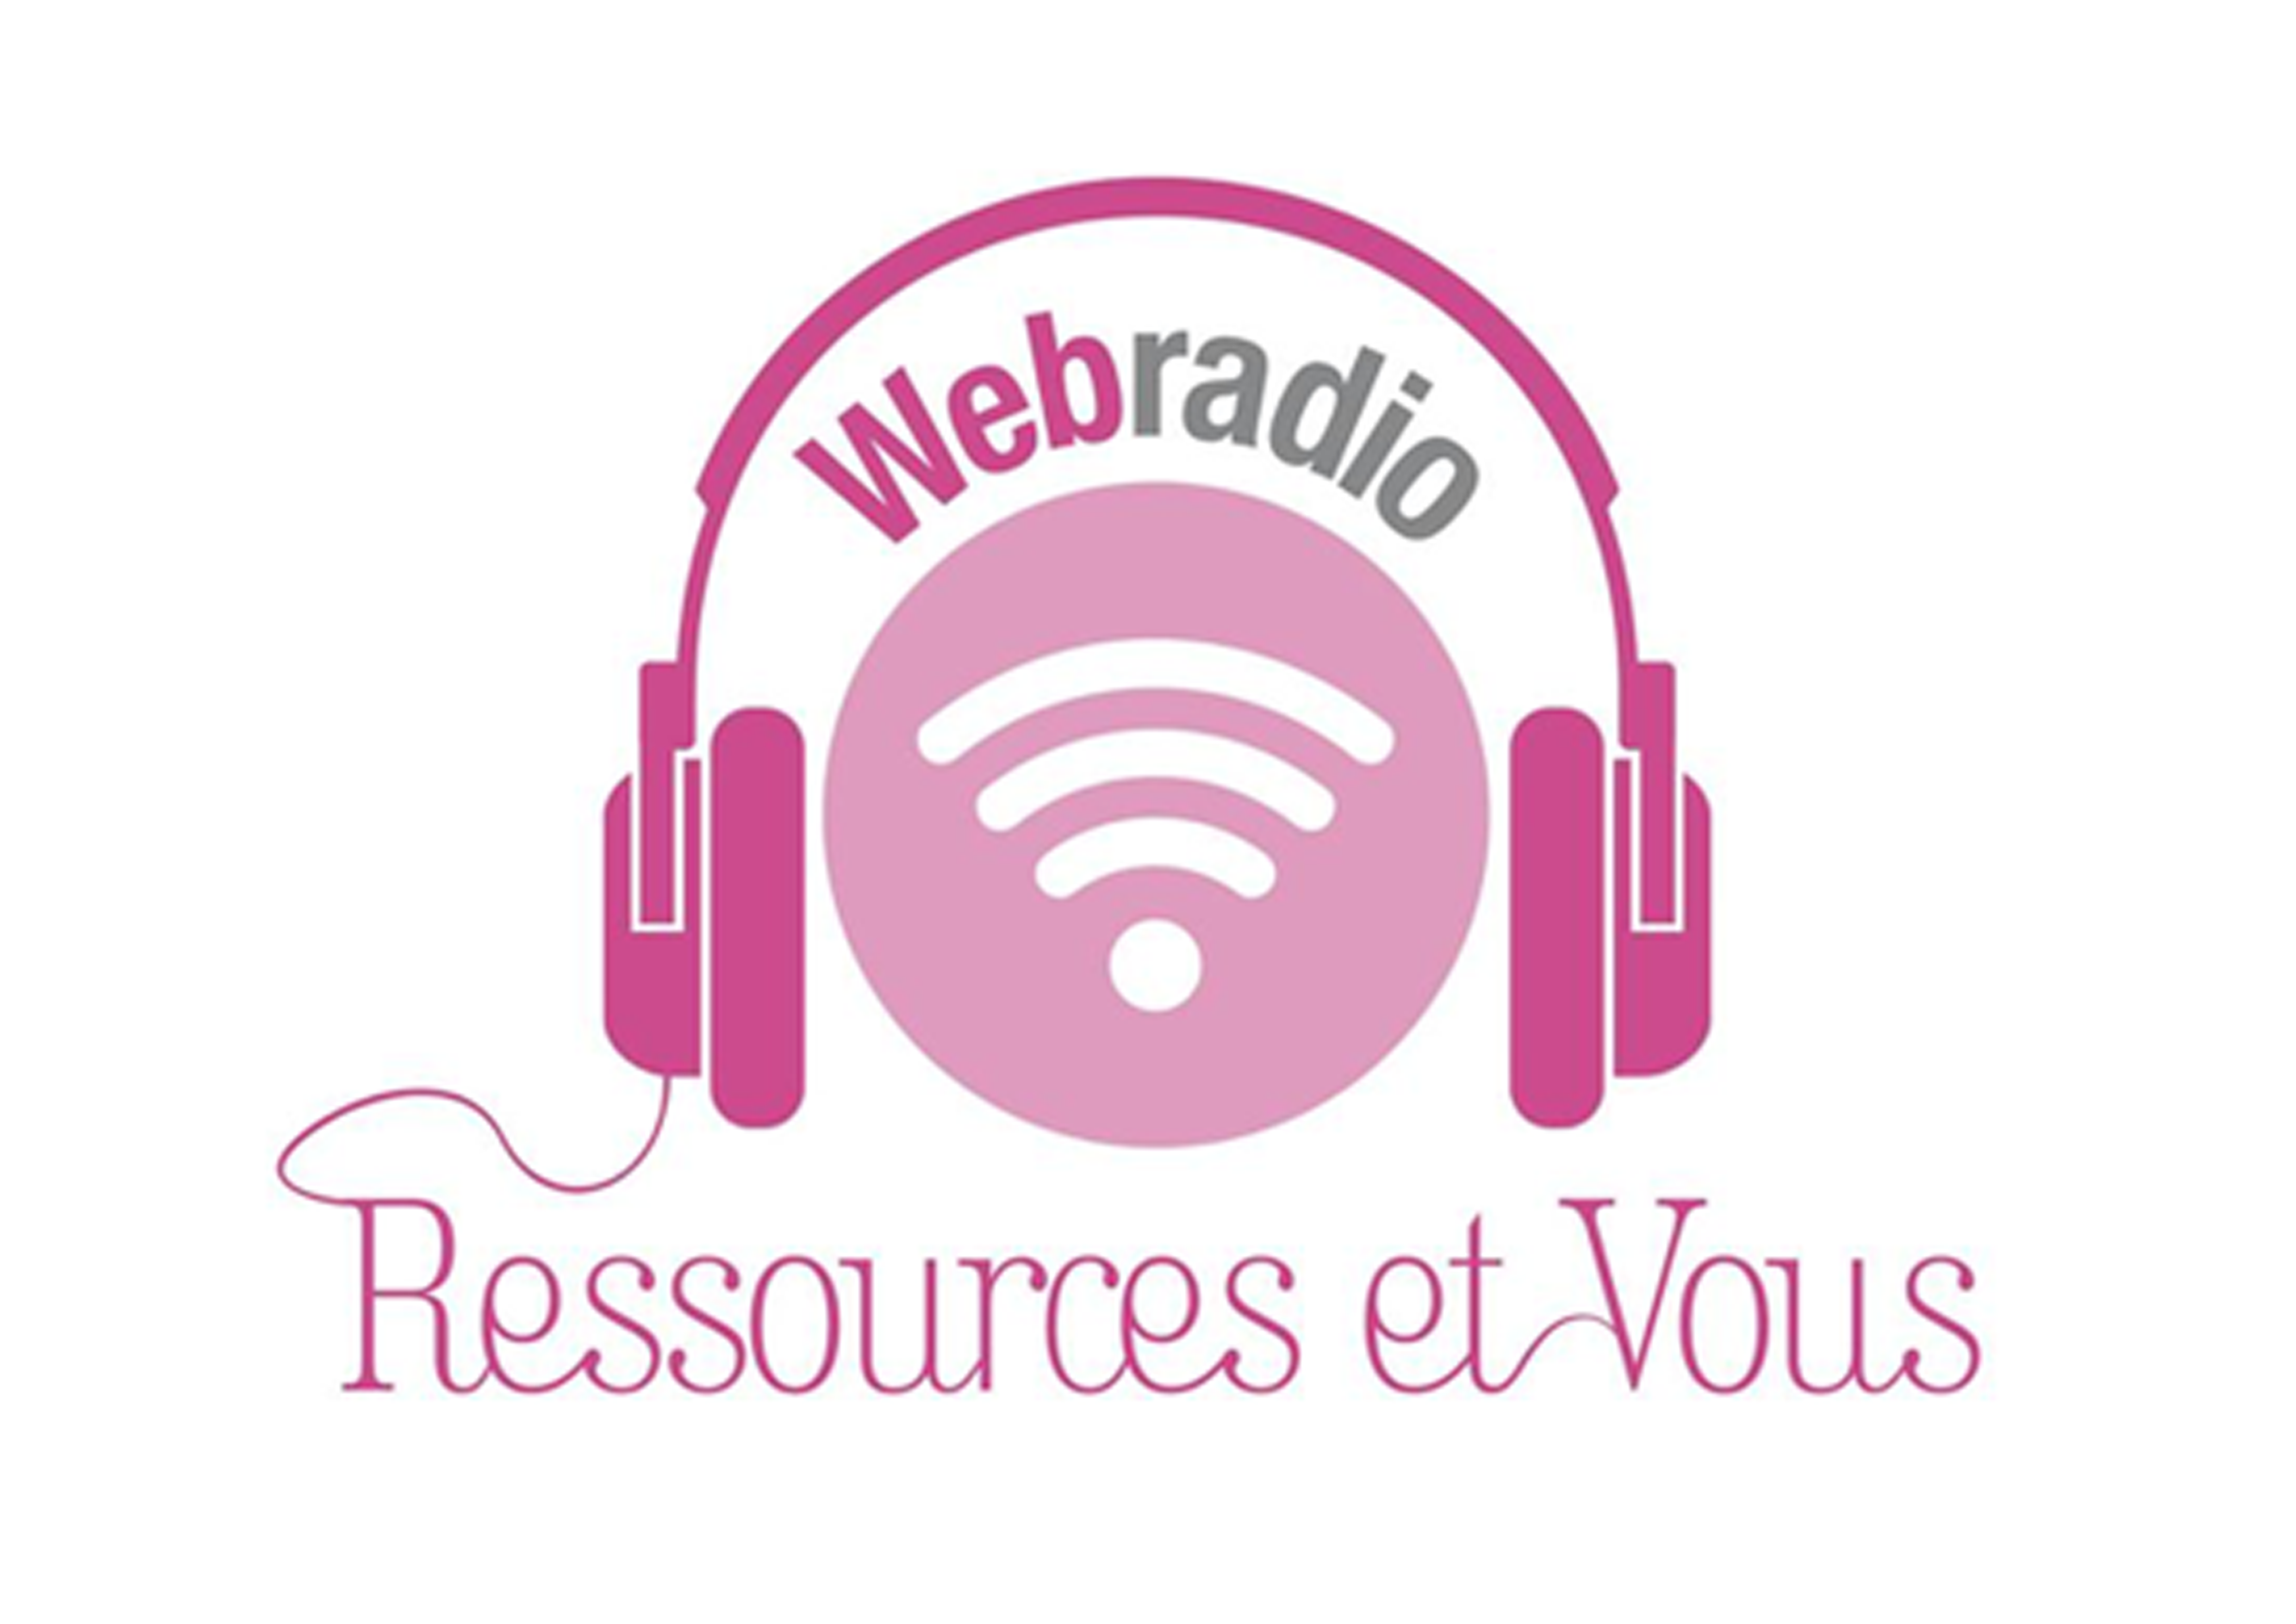 Ressources et vous - Webradio « Comment rechercher de l’information fiable ? »